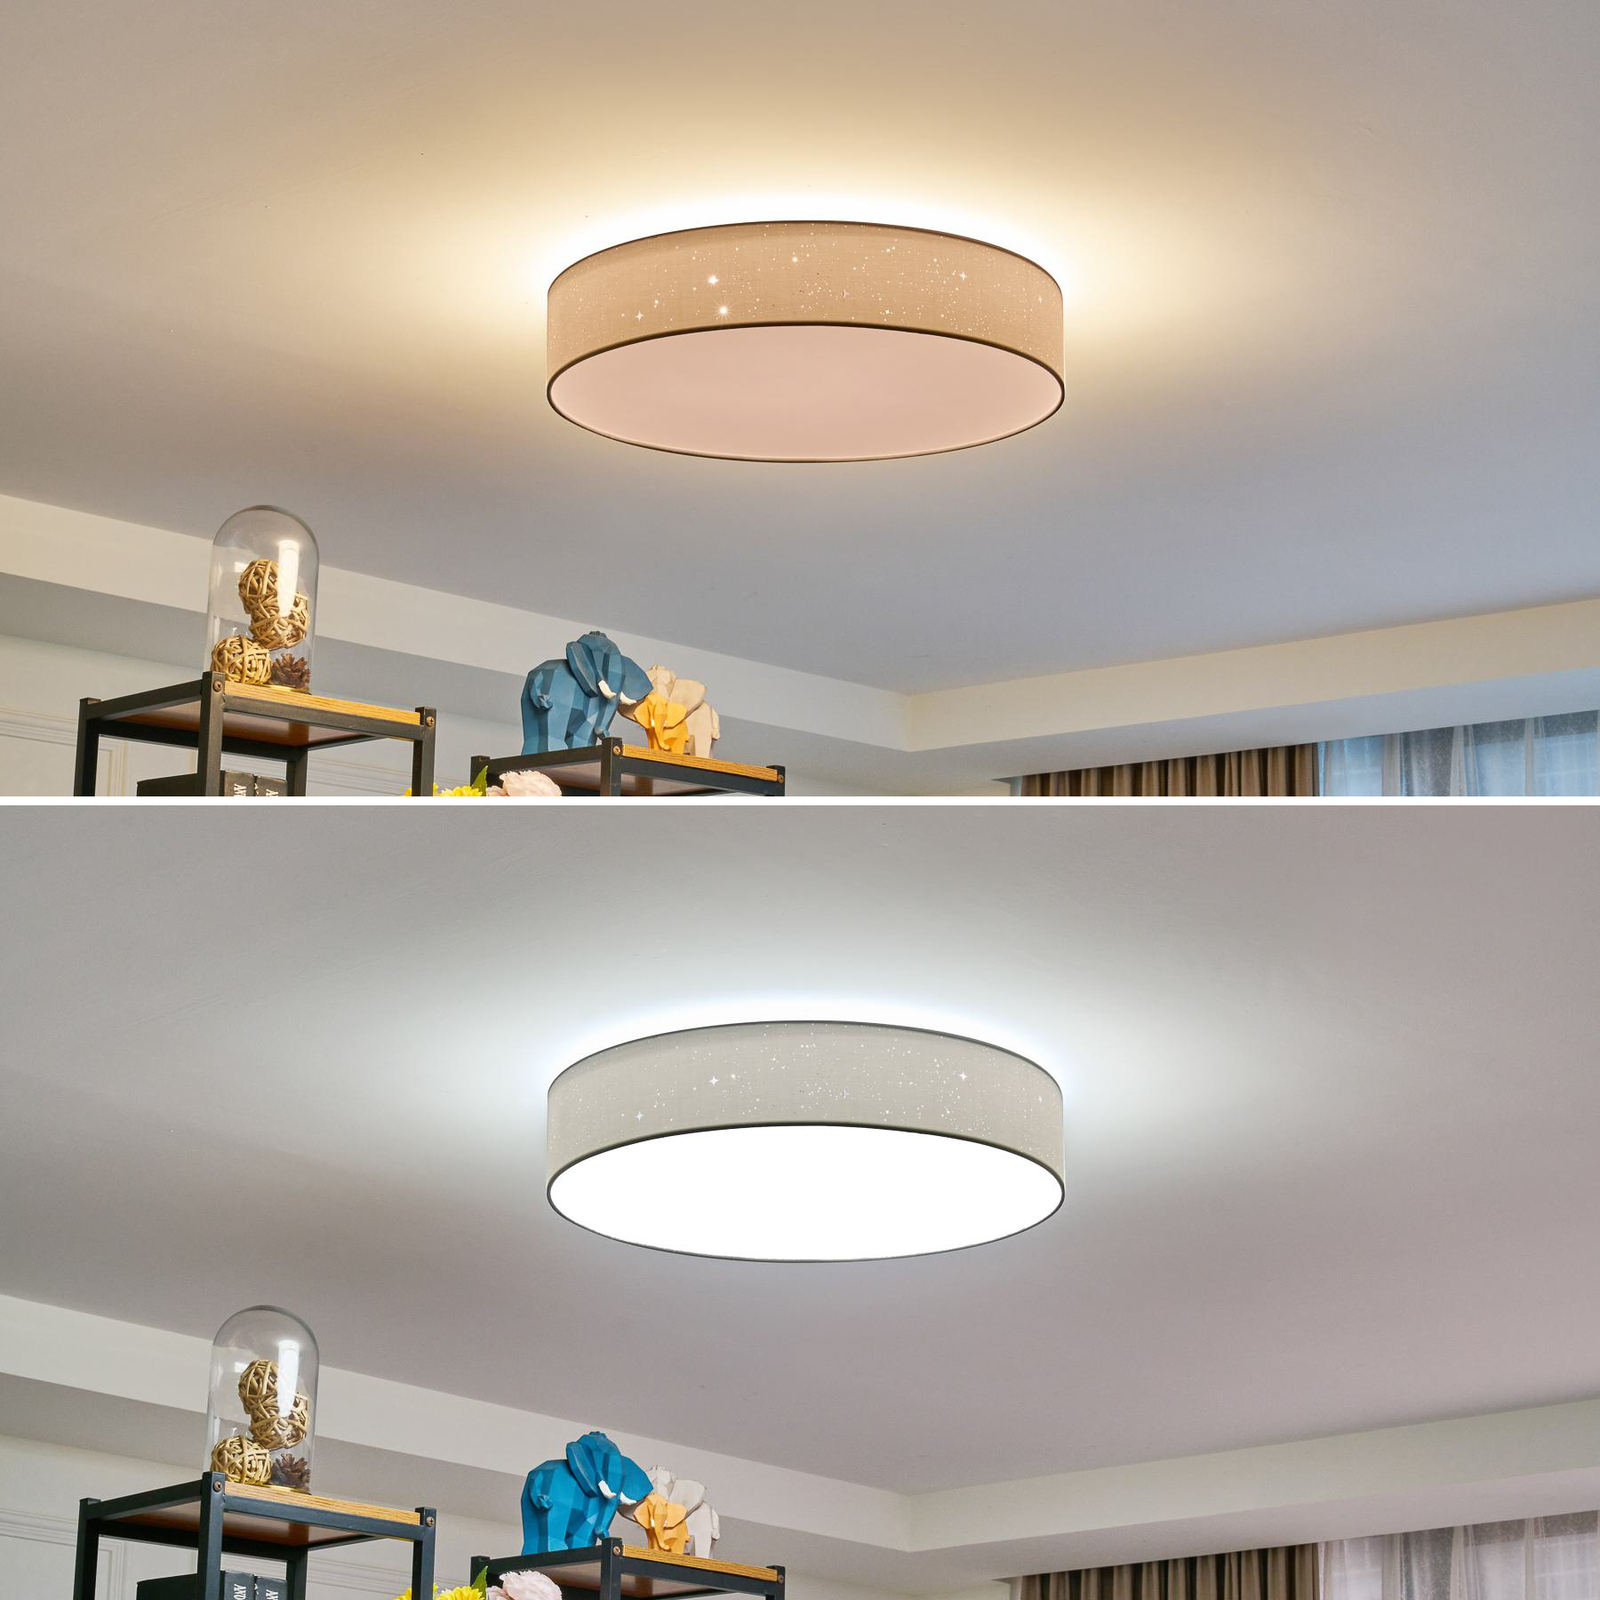 Lindby Ellamina stropné LED svietidlo 60 cm, biele